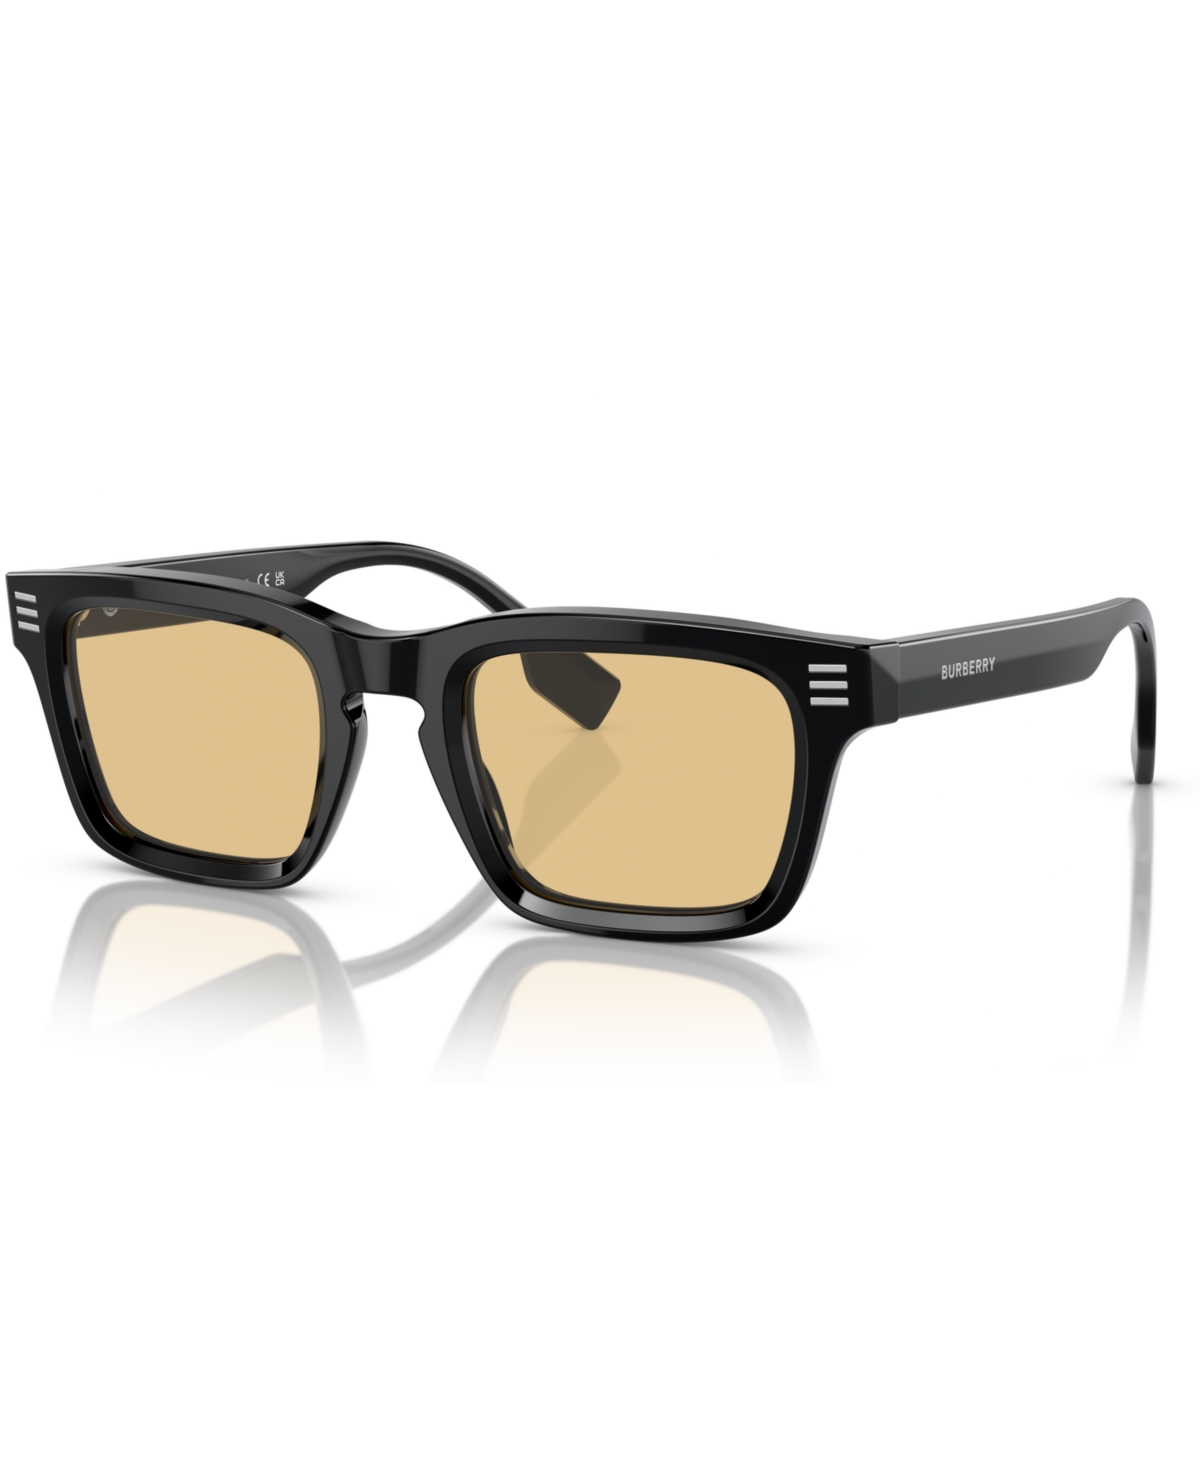 Men's Low Bridge Fit Sunglasses BE4403F - Brown